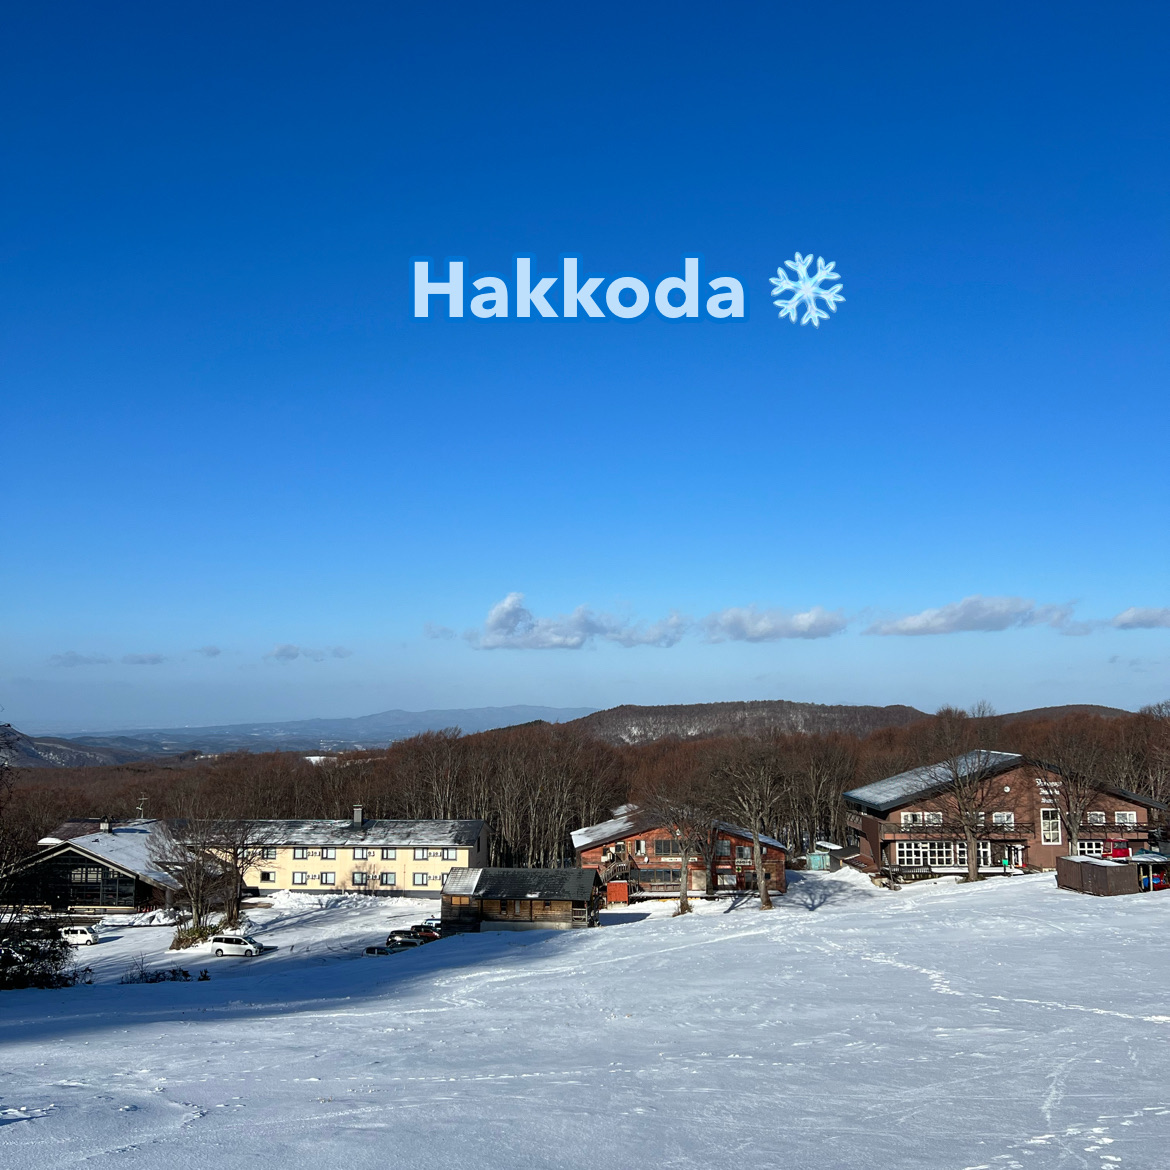 我们乘坐Hakkoda